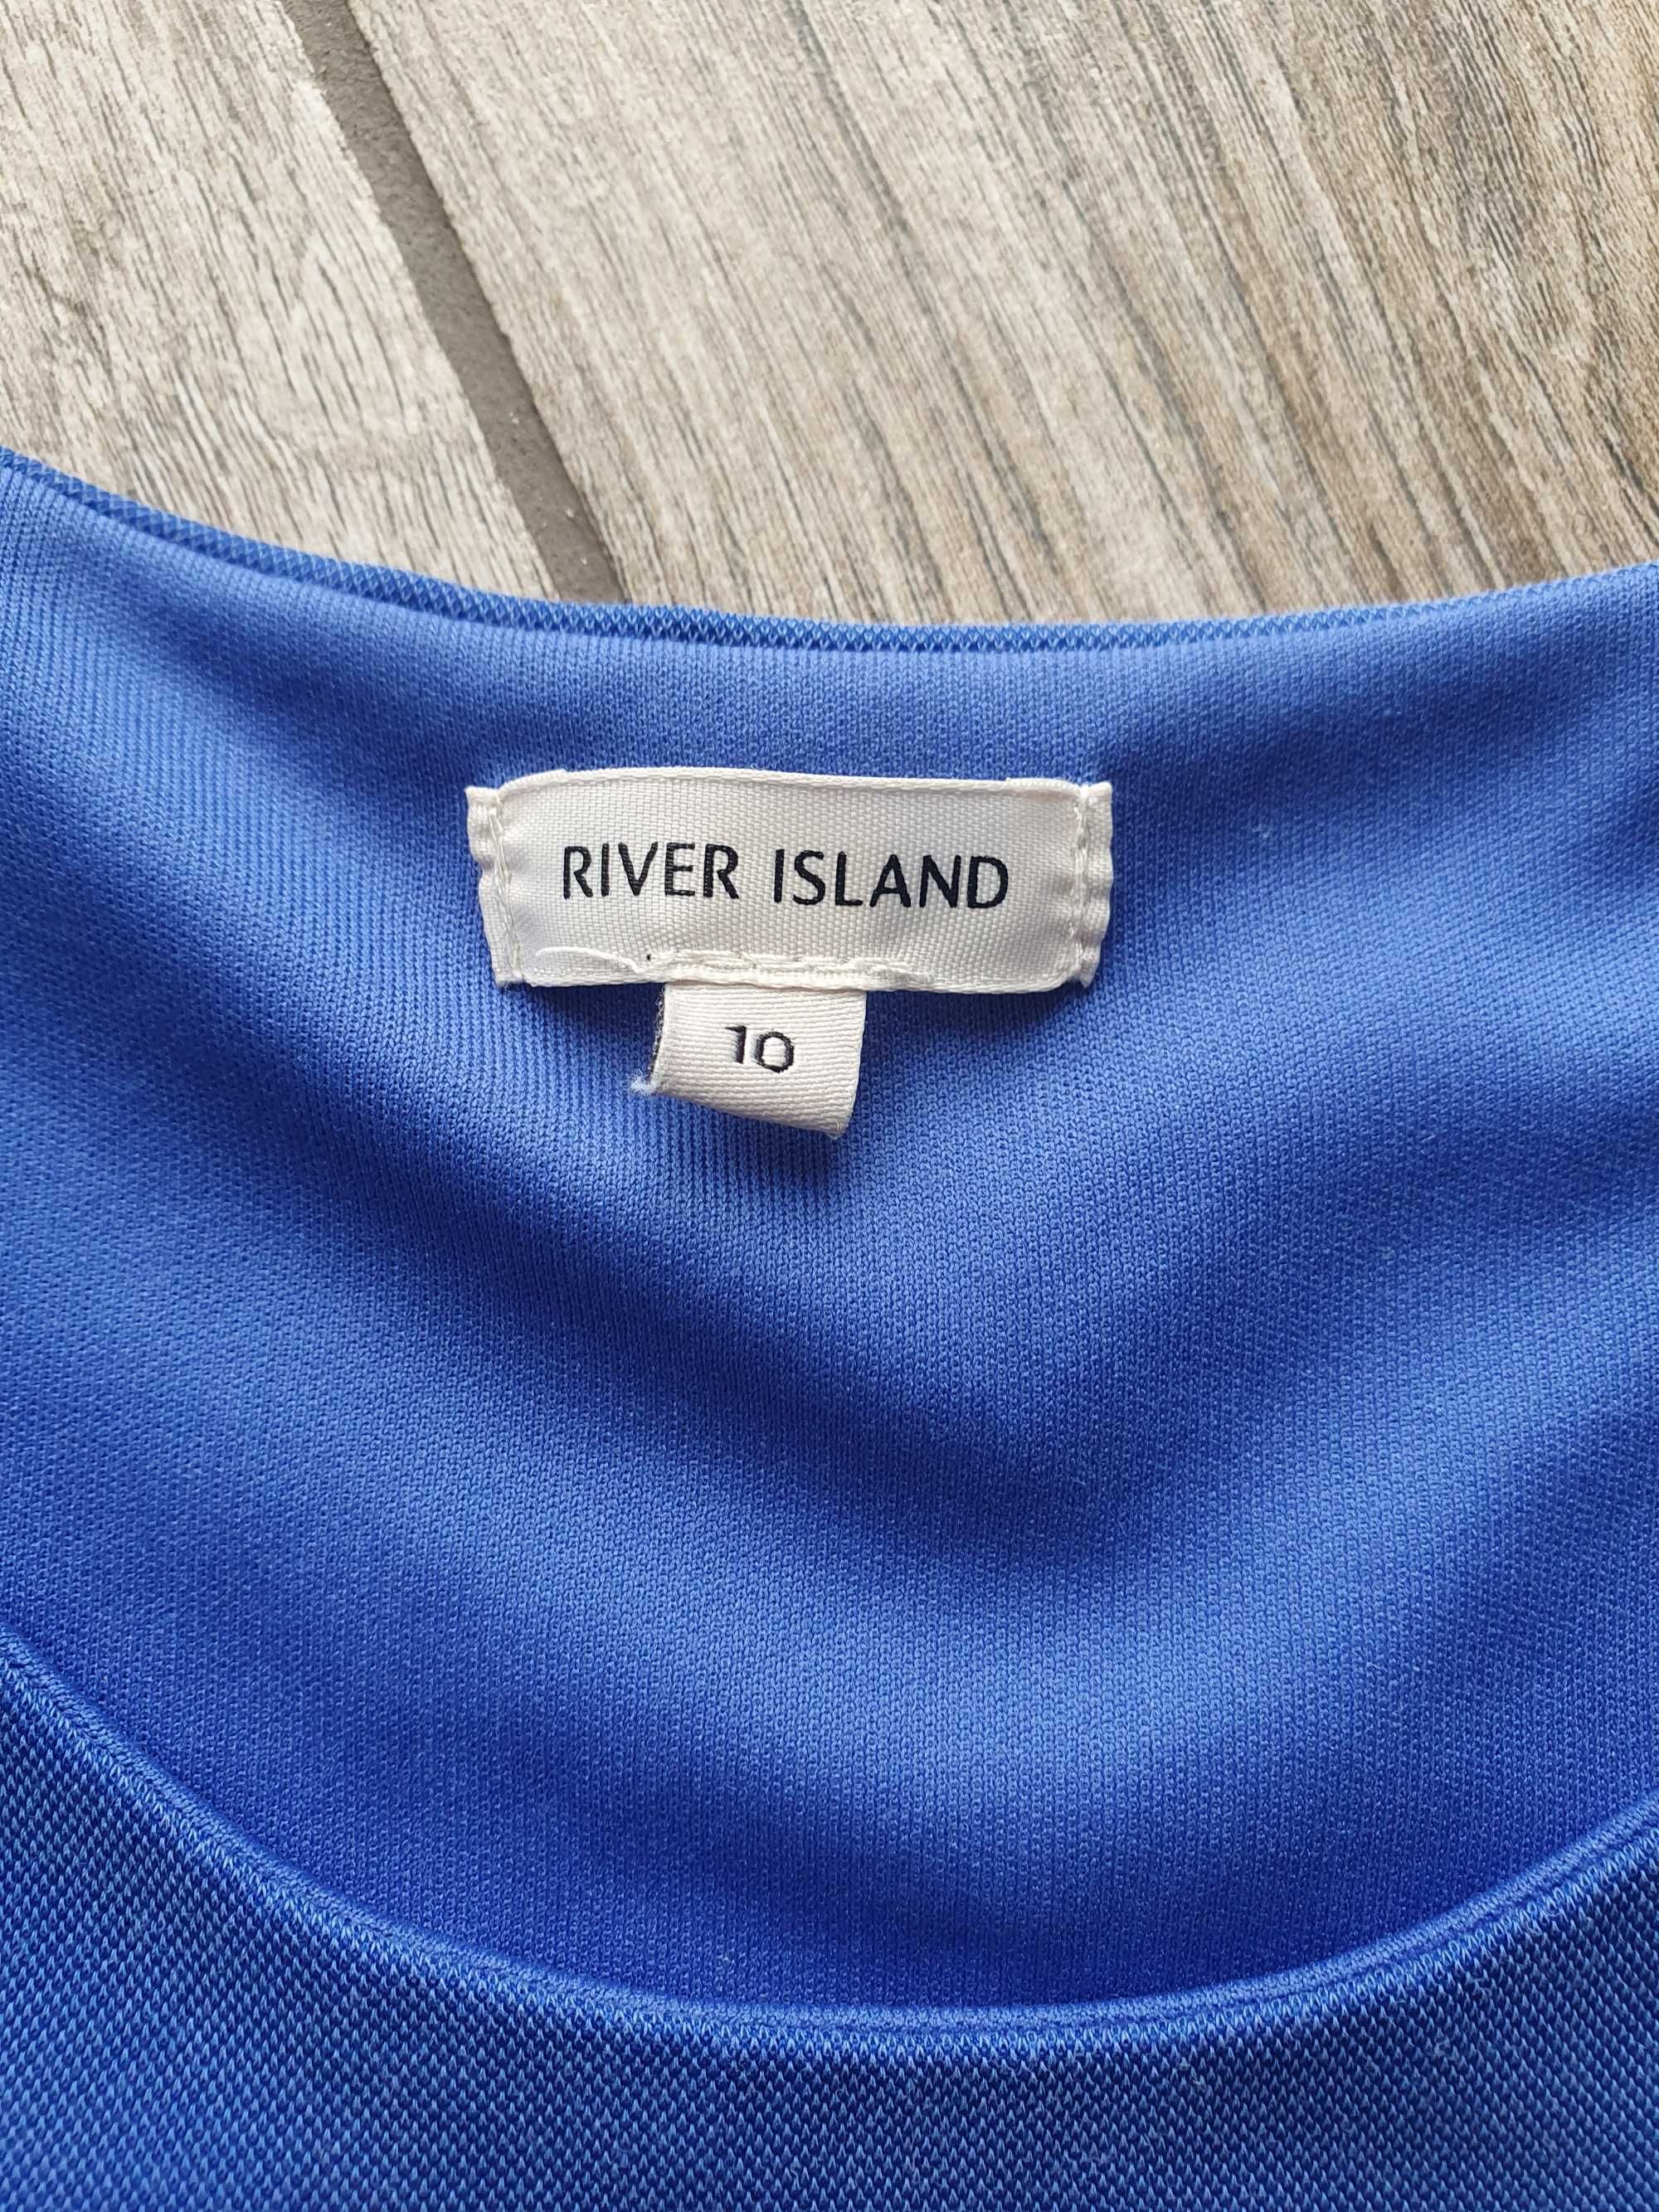 Bluzka Bluzeczka asymetryczna damska niebieska River Island M